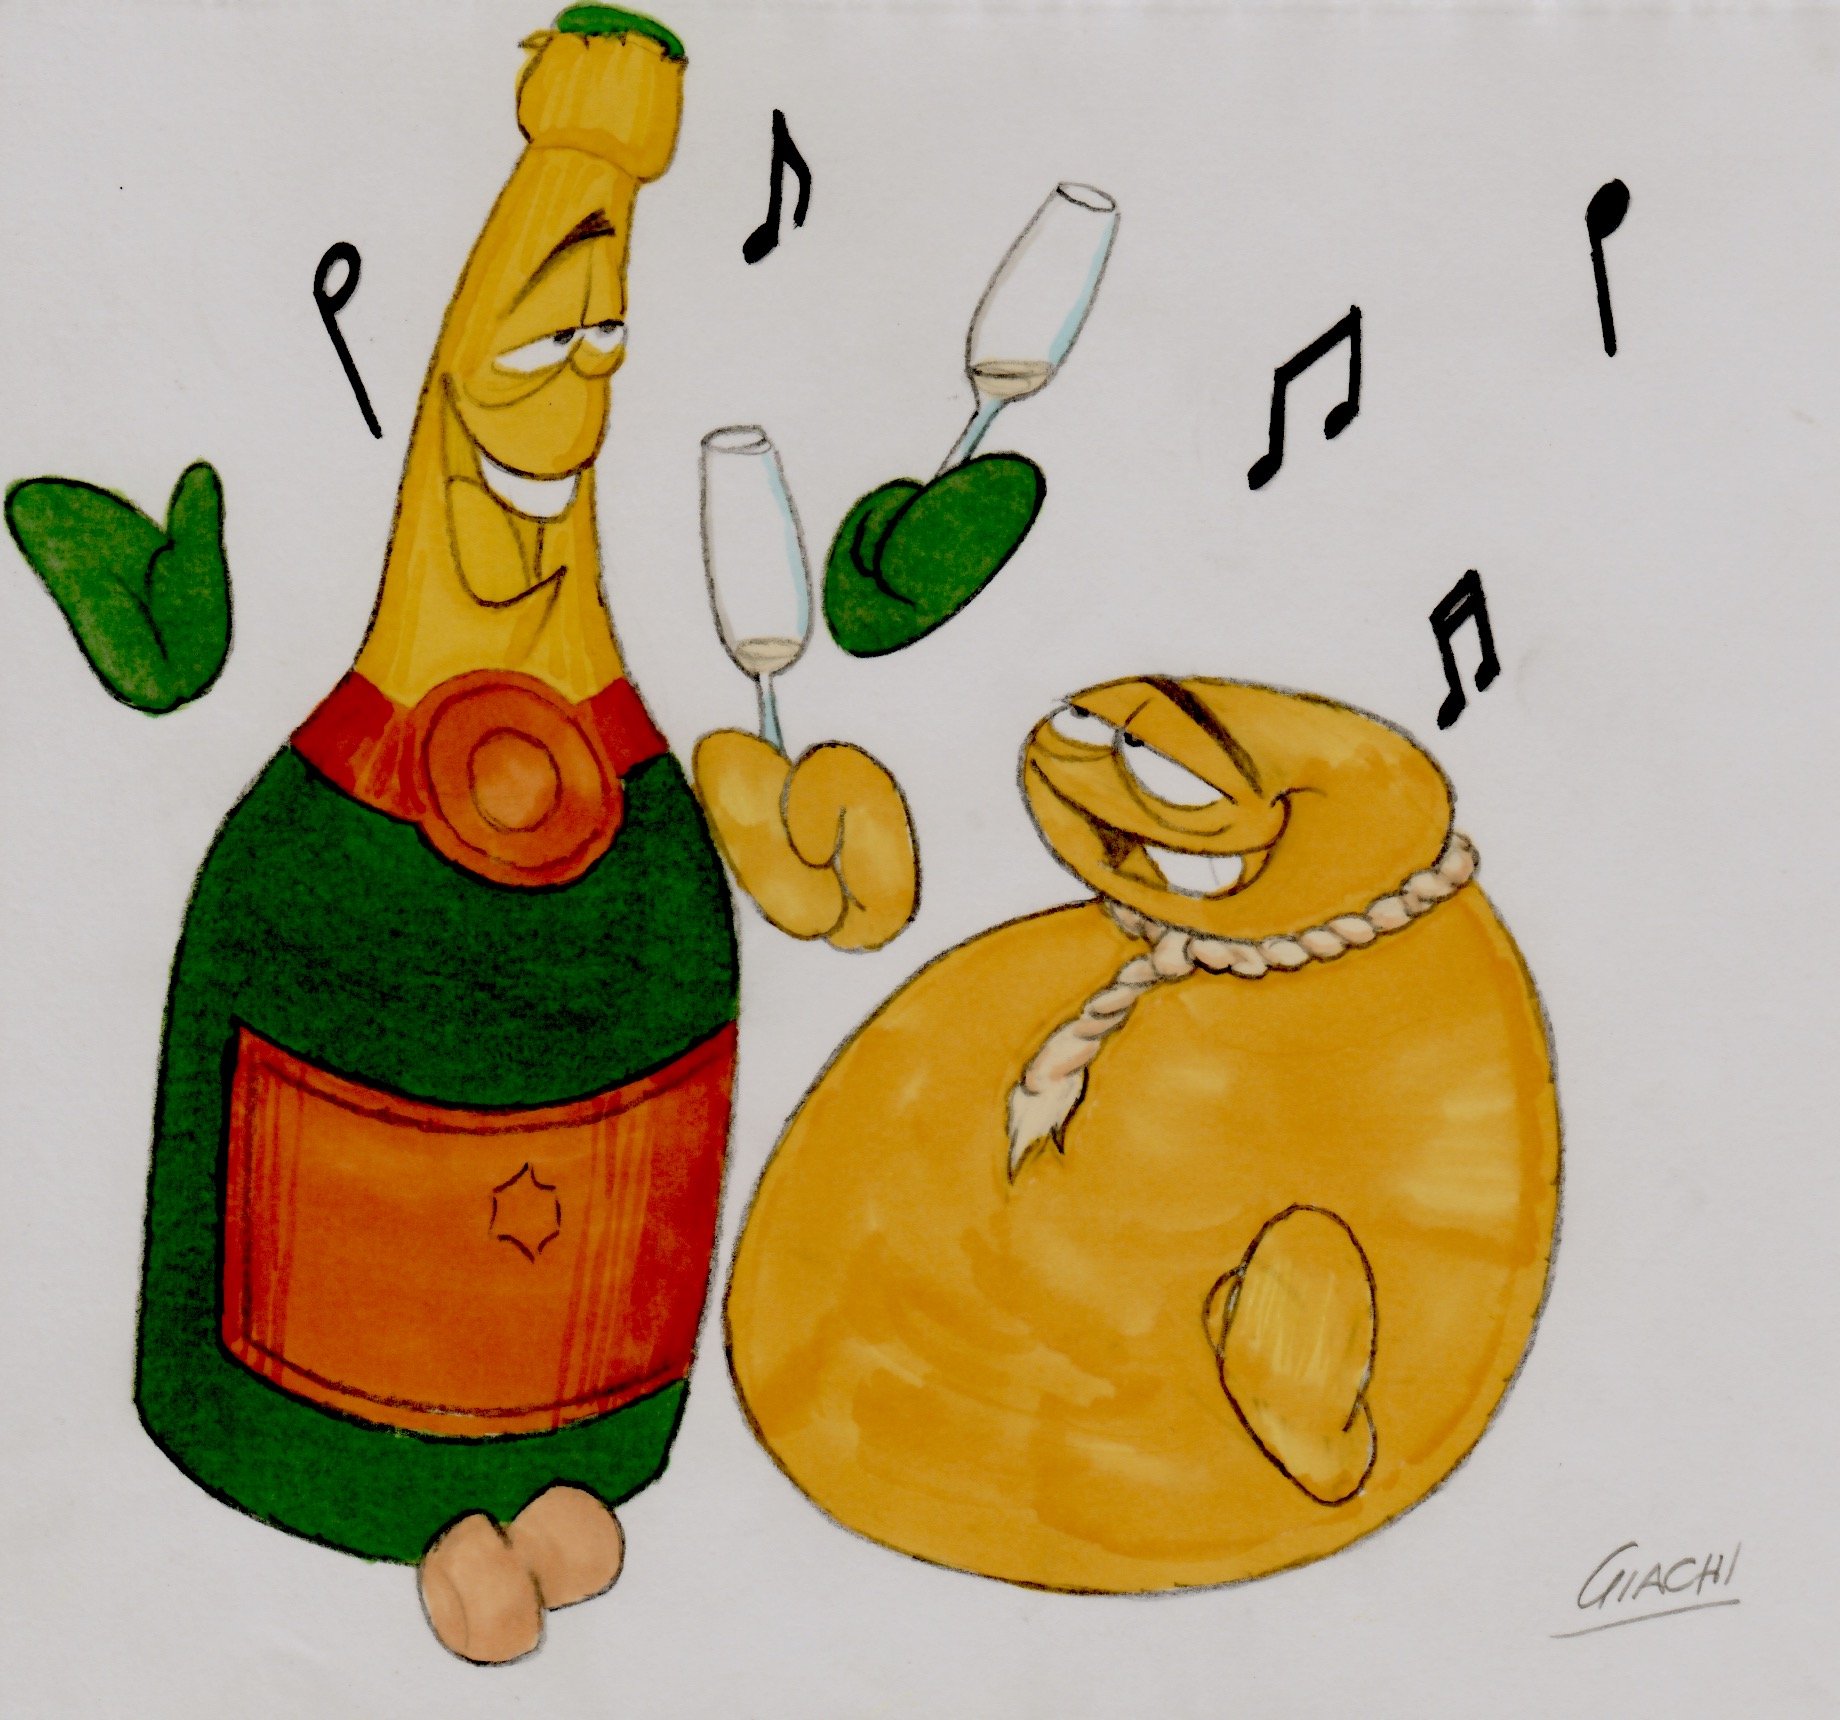 risotto provola e champagne - Giachi